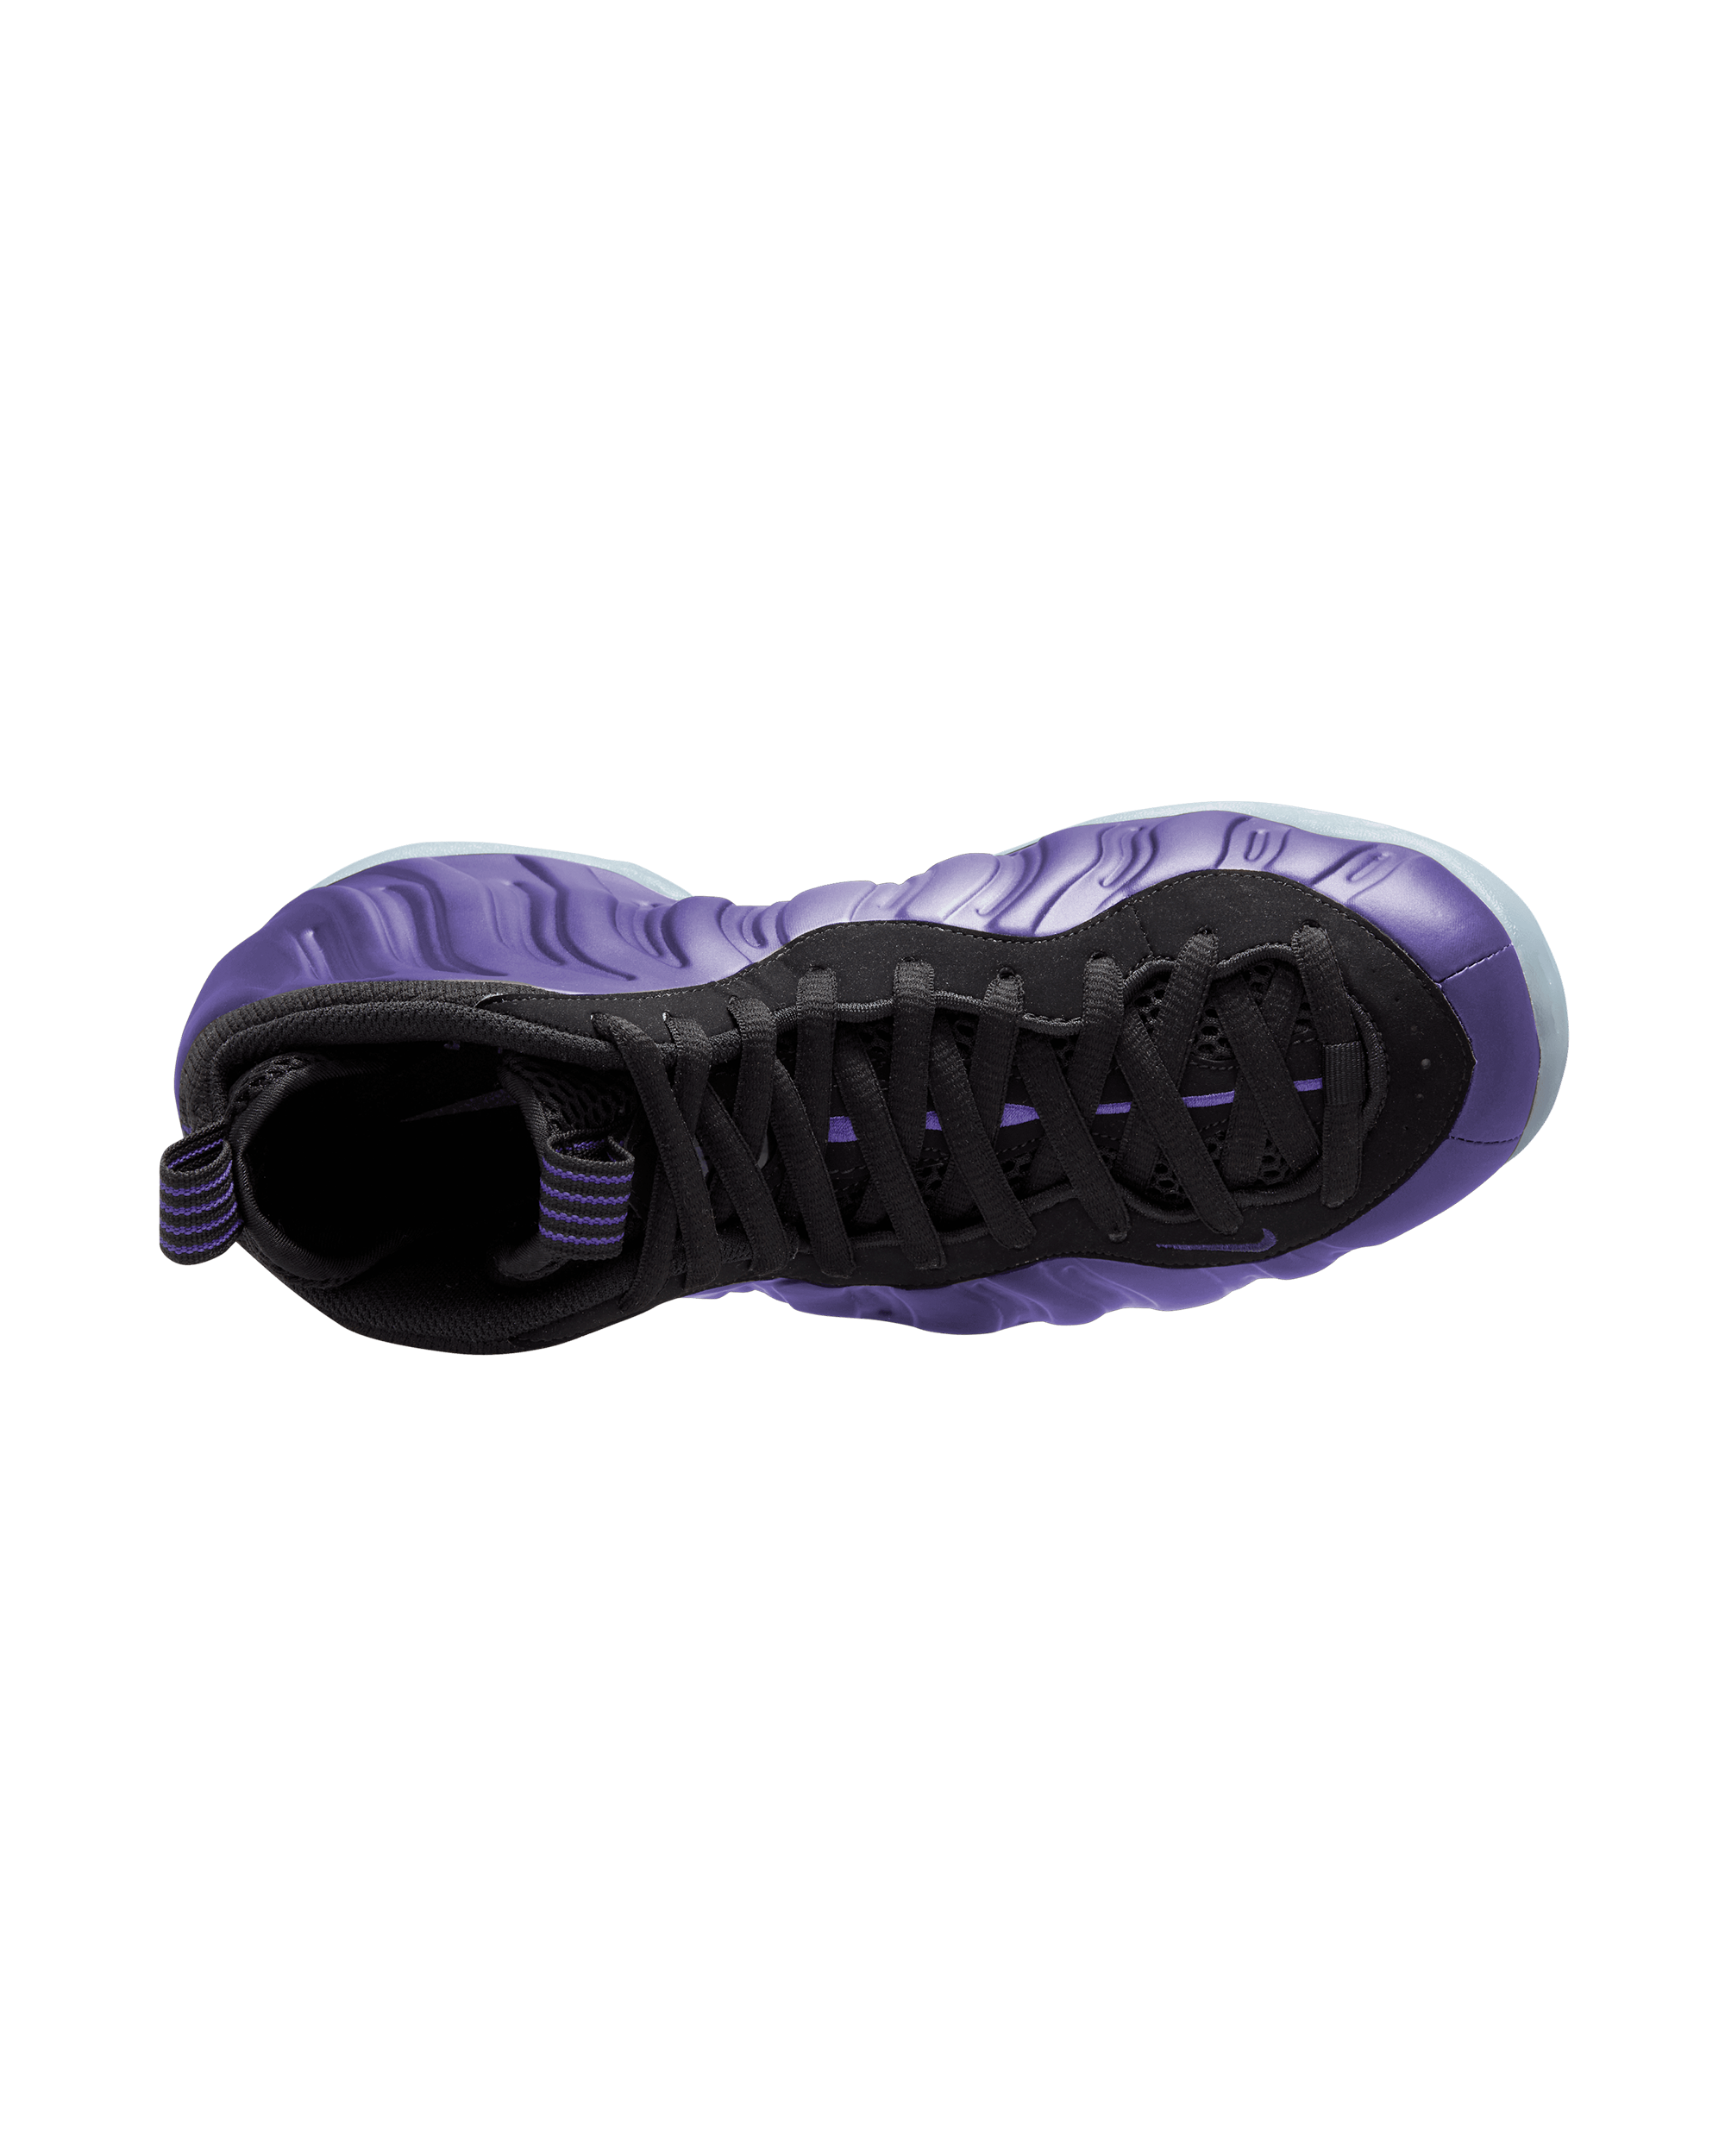 Air Foamposite One - Black / Varsity Purple-Black